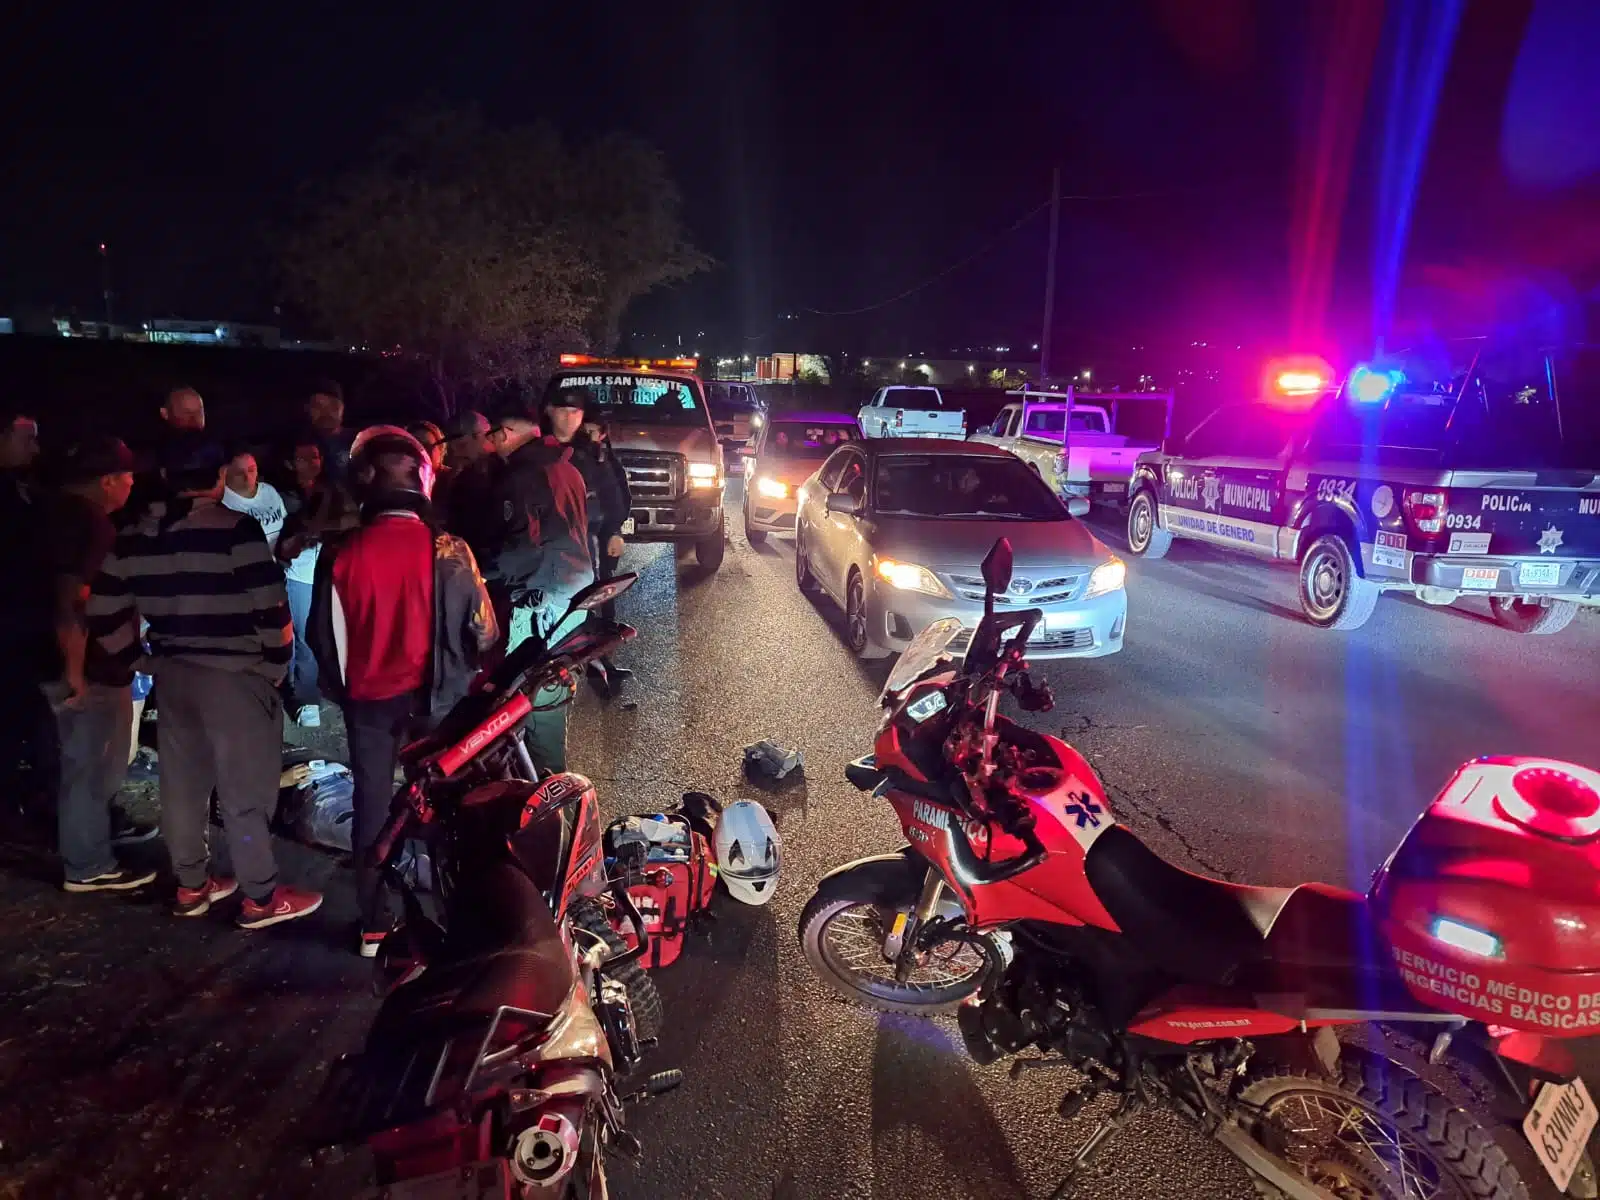 Patrulla de la Policía Municipal, carros, motocicletas y personas en el lugar donde Jesús tuvo un accidente tipo choque en Culiacán